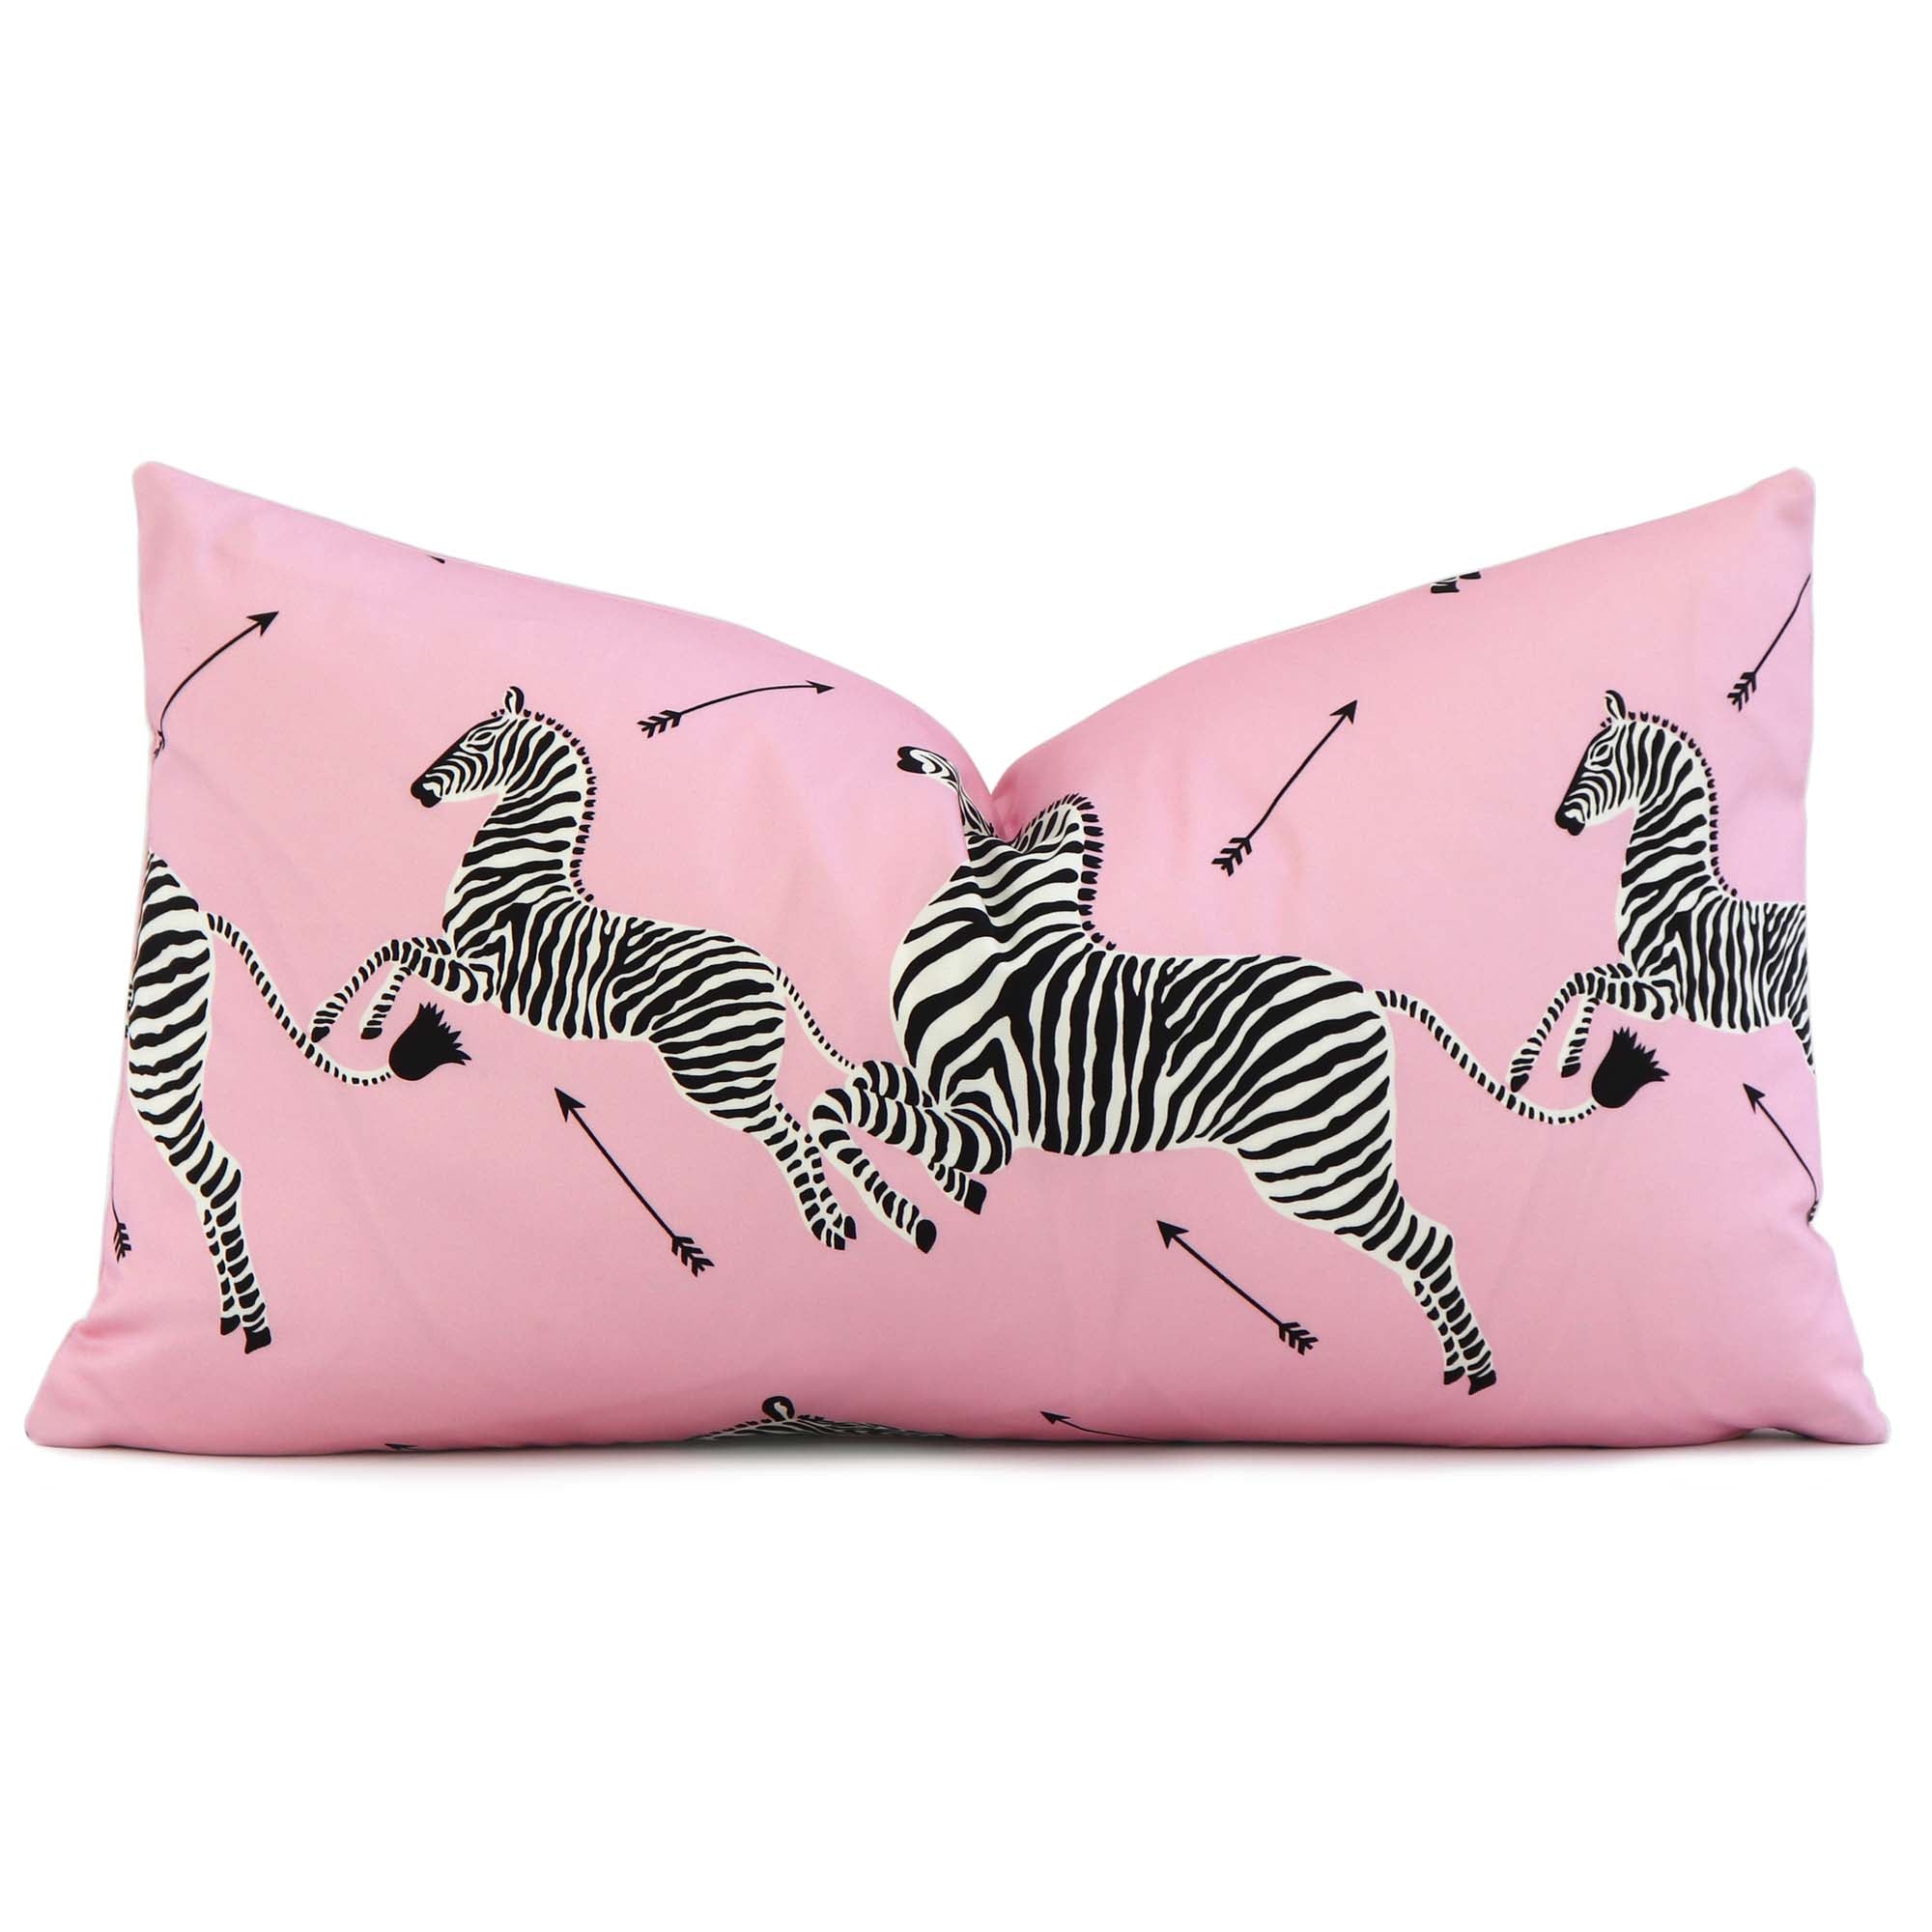 Scalamandre Zebras Petite Peony Pink Designer Animal Print Lumbar Throw Pillow Cover